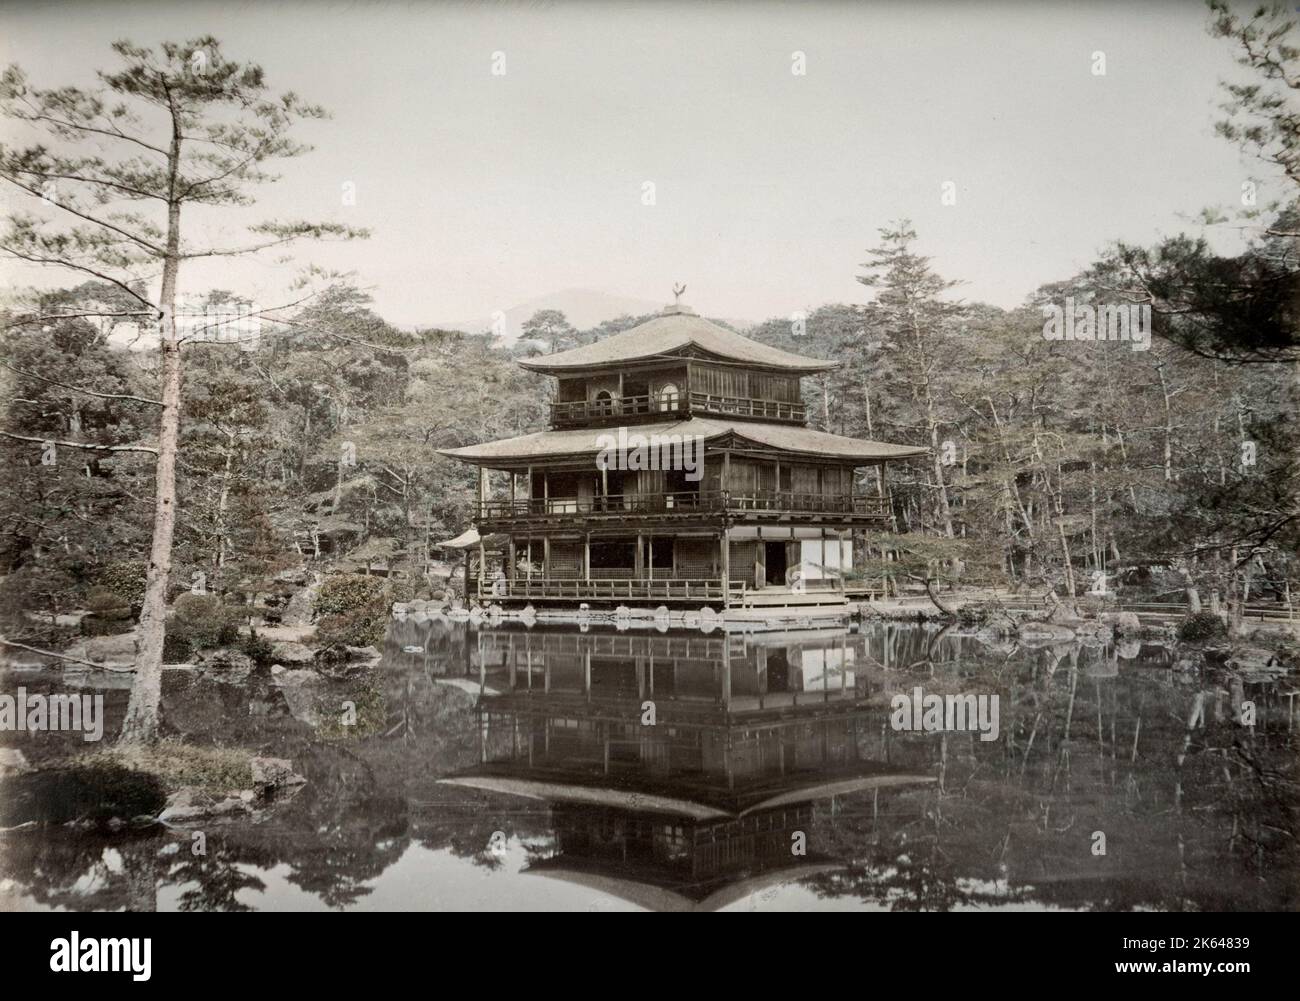 Vintage 19. Jahrhundert Fotografie - Japan - aus dem Atelier von Baron Raimund von Stillfried. Kinkaku-ji (金閣寺, wörtlich 'Tempel des Goldenen Pavillons'), offiziell Rokuon-ji (鹿苑寺, wörtlich 'Hirschgarten-Tempel') genannt, ist ein Zen-buddhistischer Tempel in Kyoto, Japan. Stockfoto